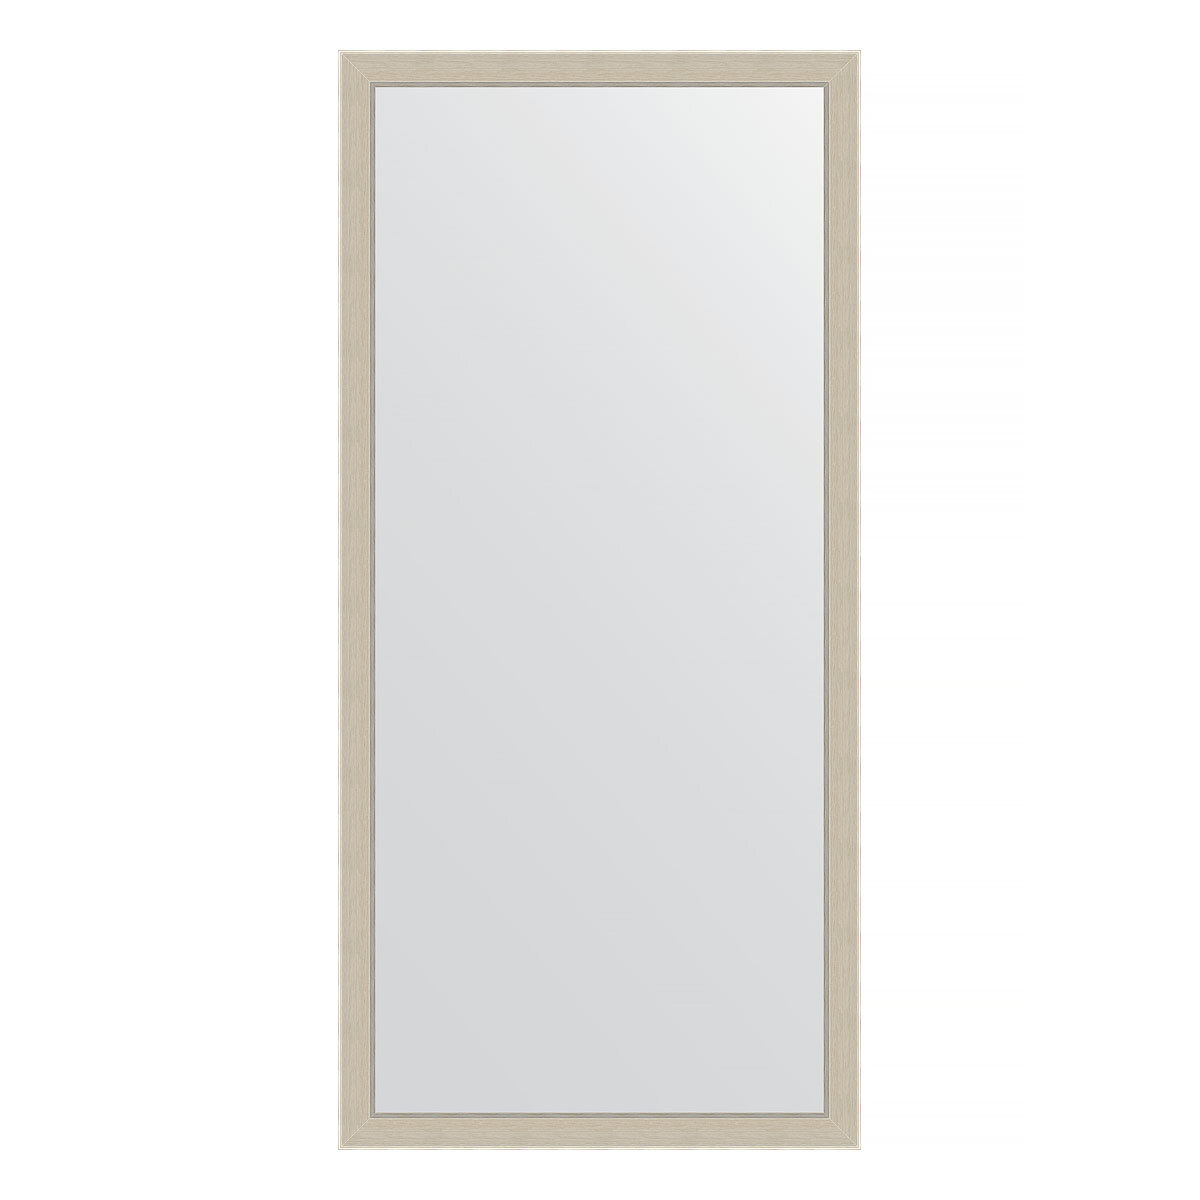 Зеркало настенное EVOFORM в багетной раме травленое серебро, 73х153 см, для гостиной, прихожей, кабинета, спальни и ванной комнаты, BY 3899